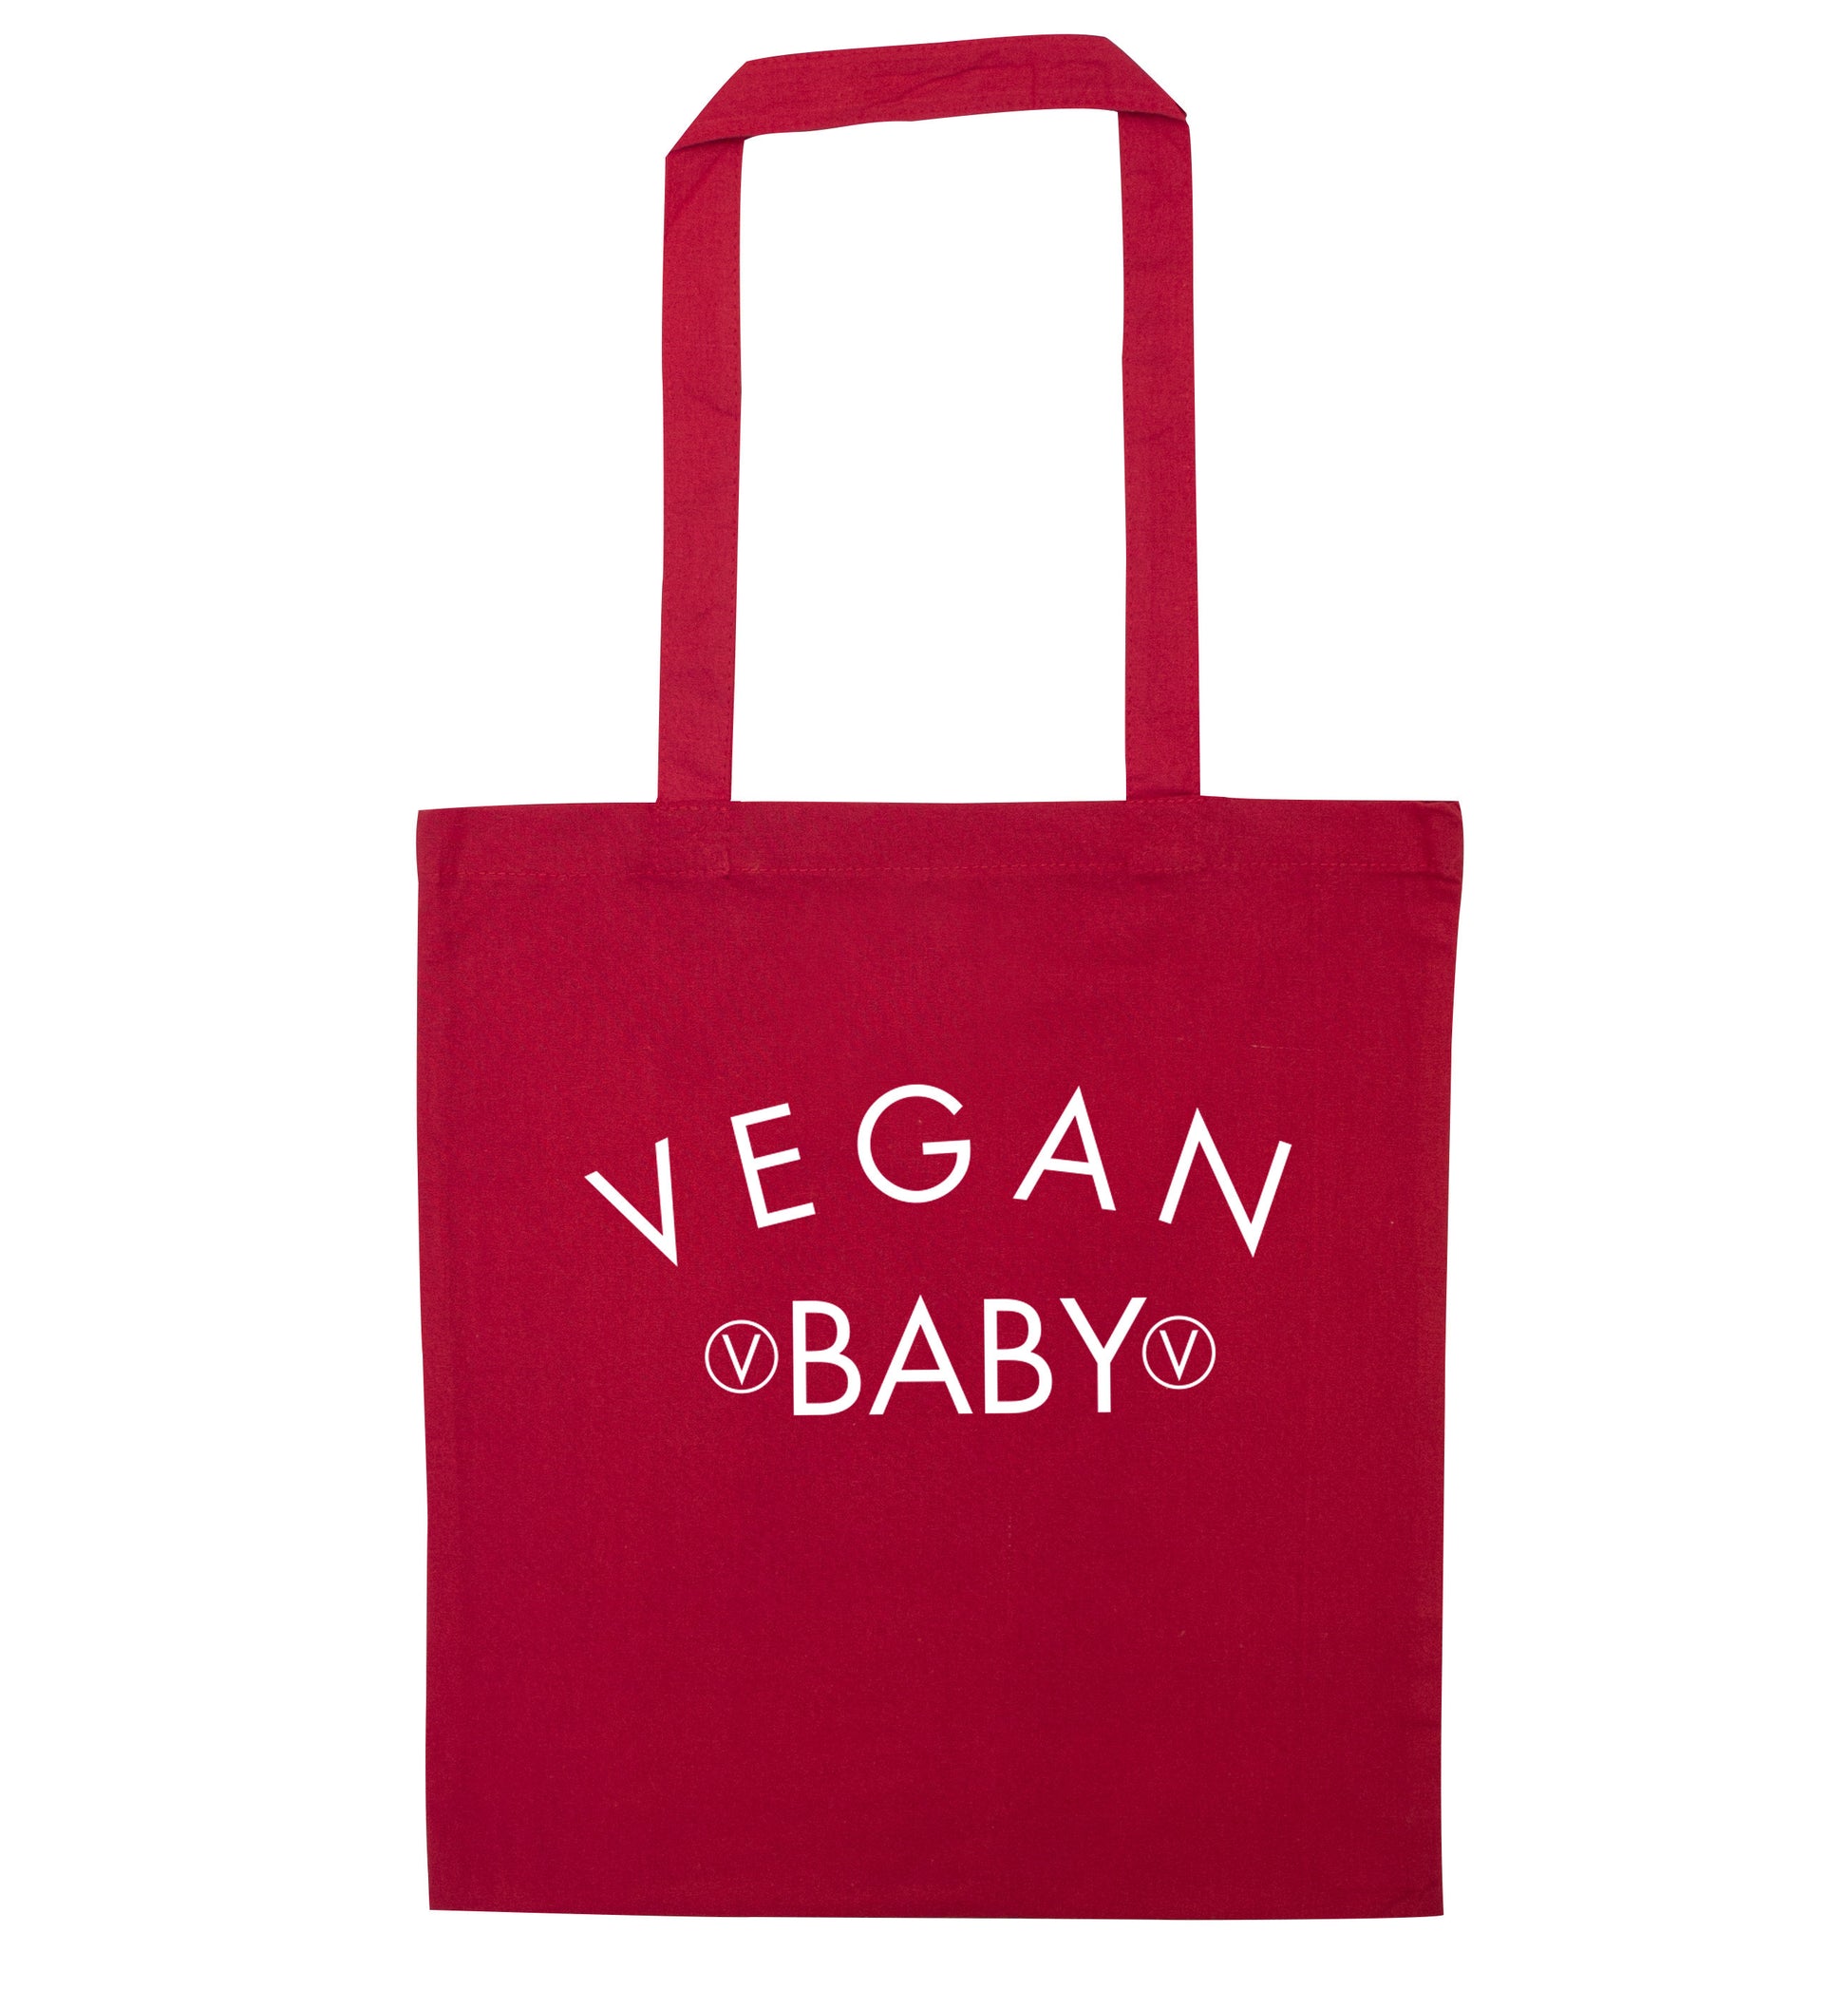 Vegan baby red tote bag